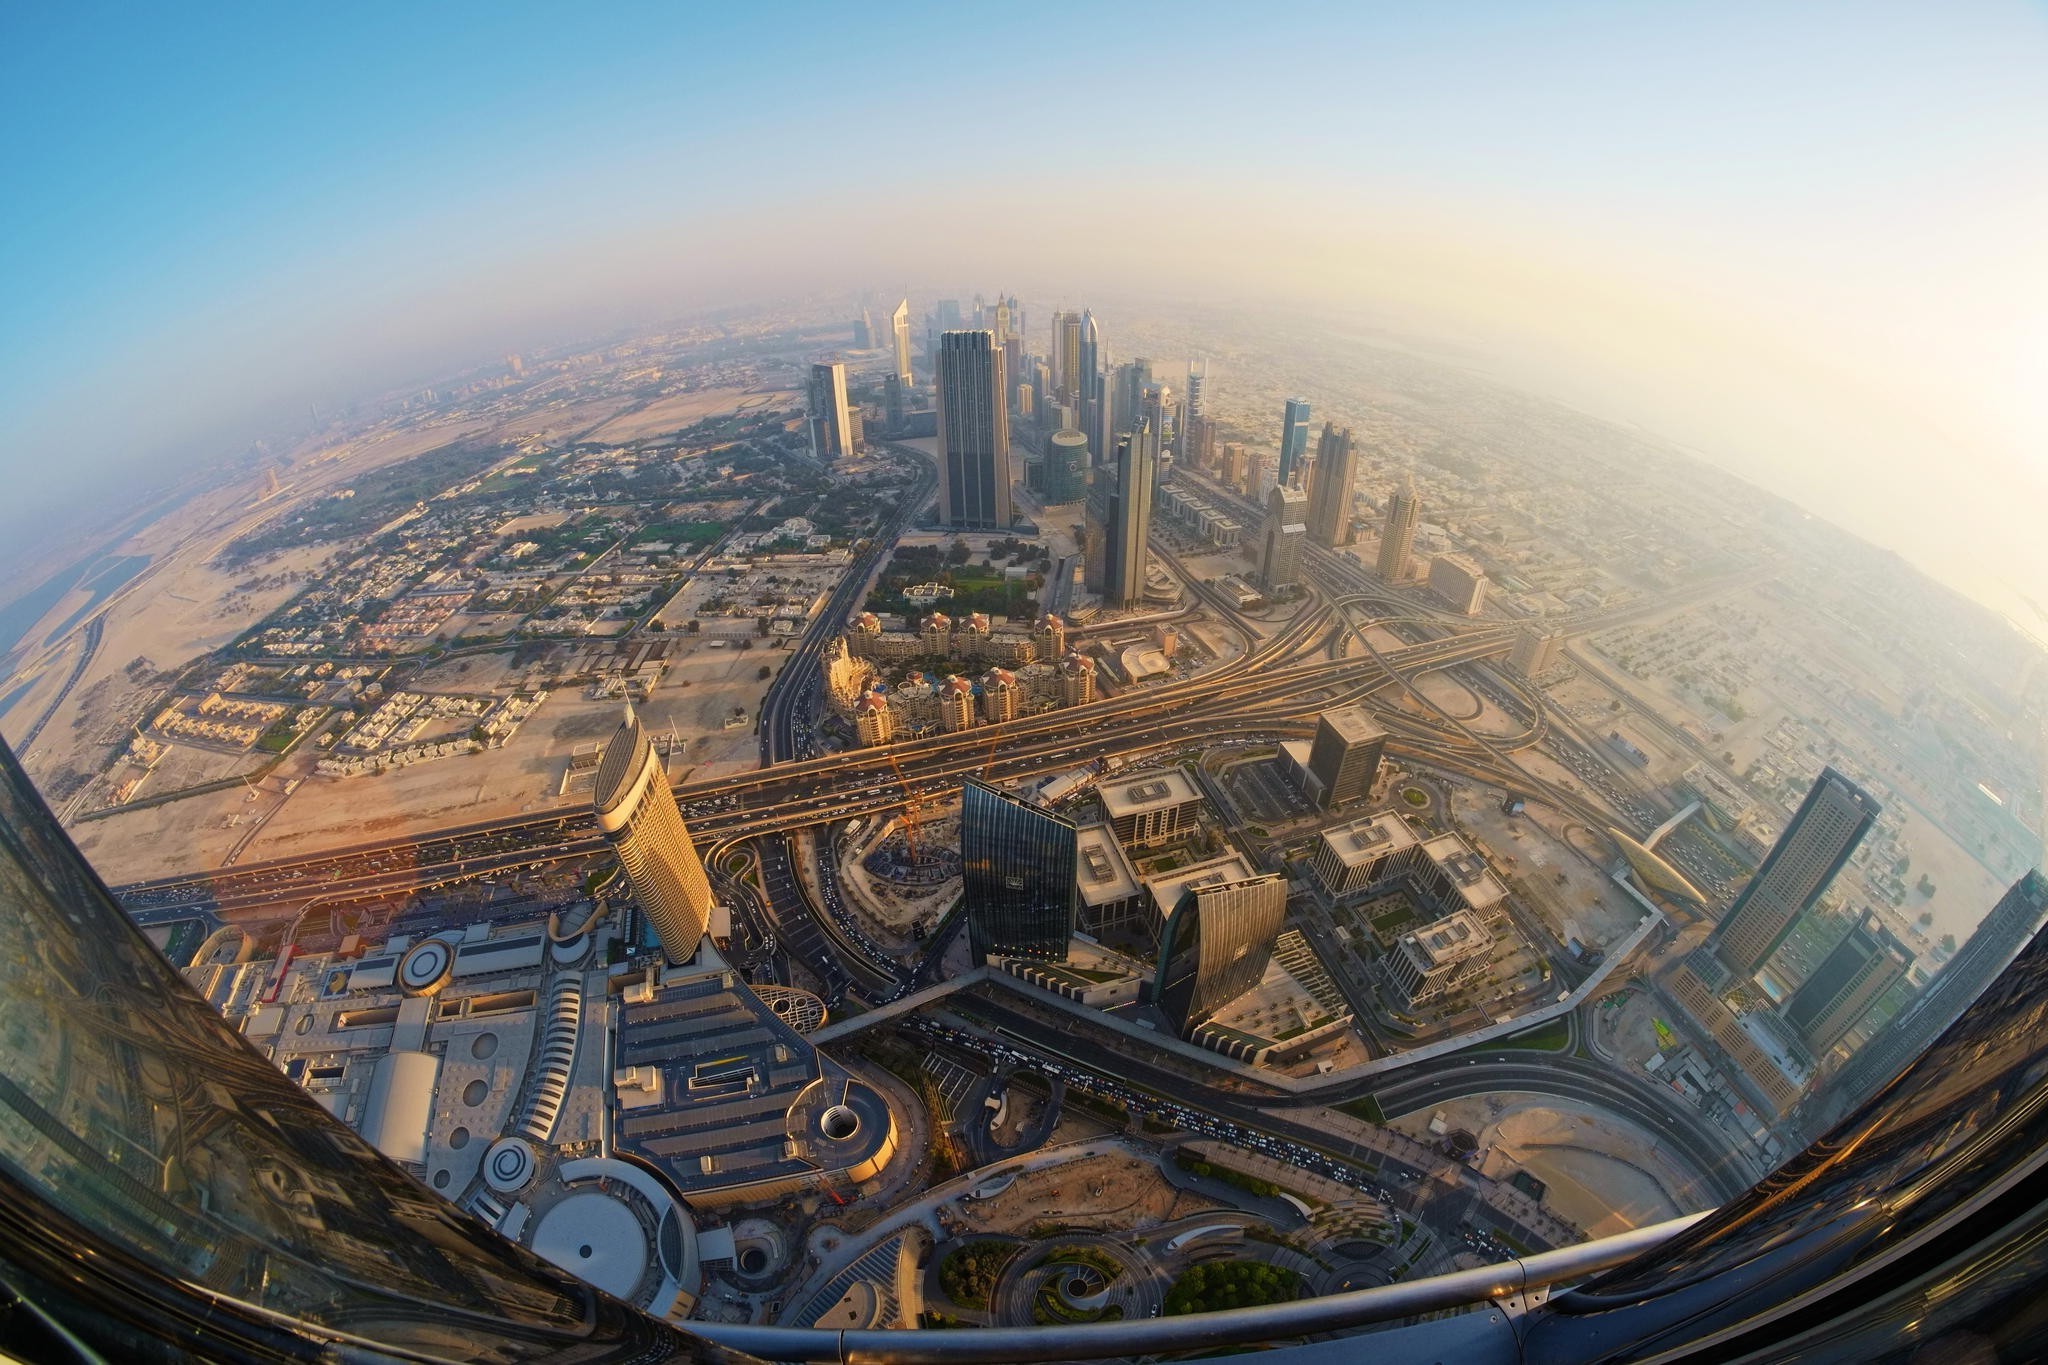 500px, Photography, Landscape, Dubai Wallpaper